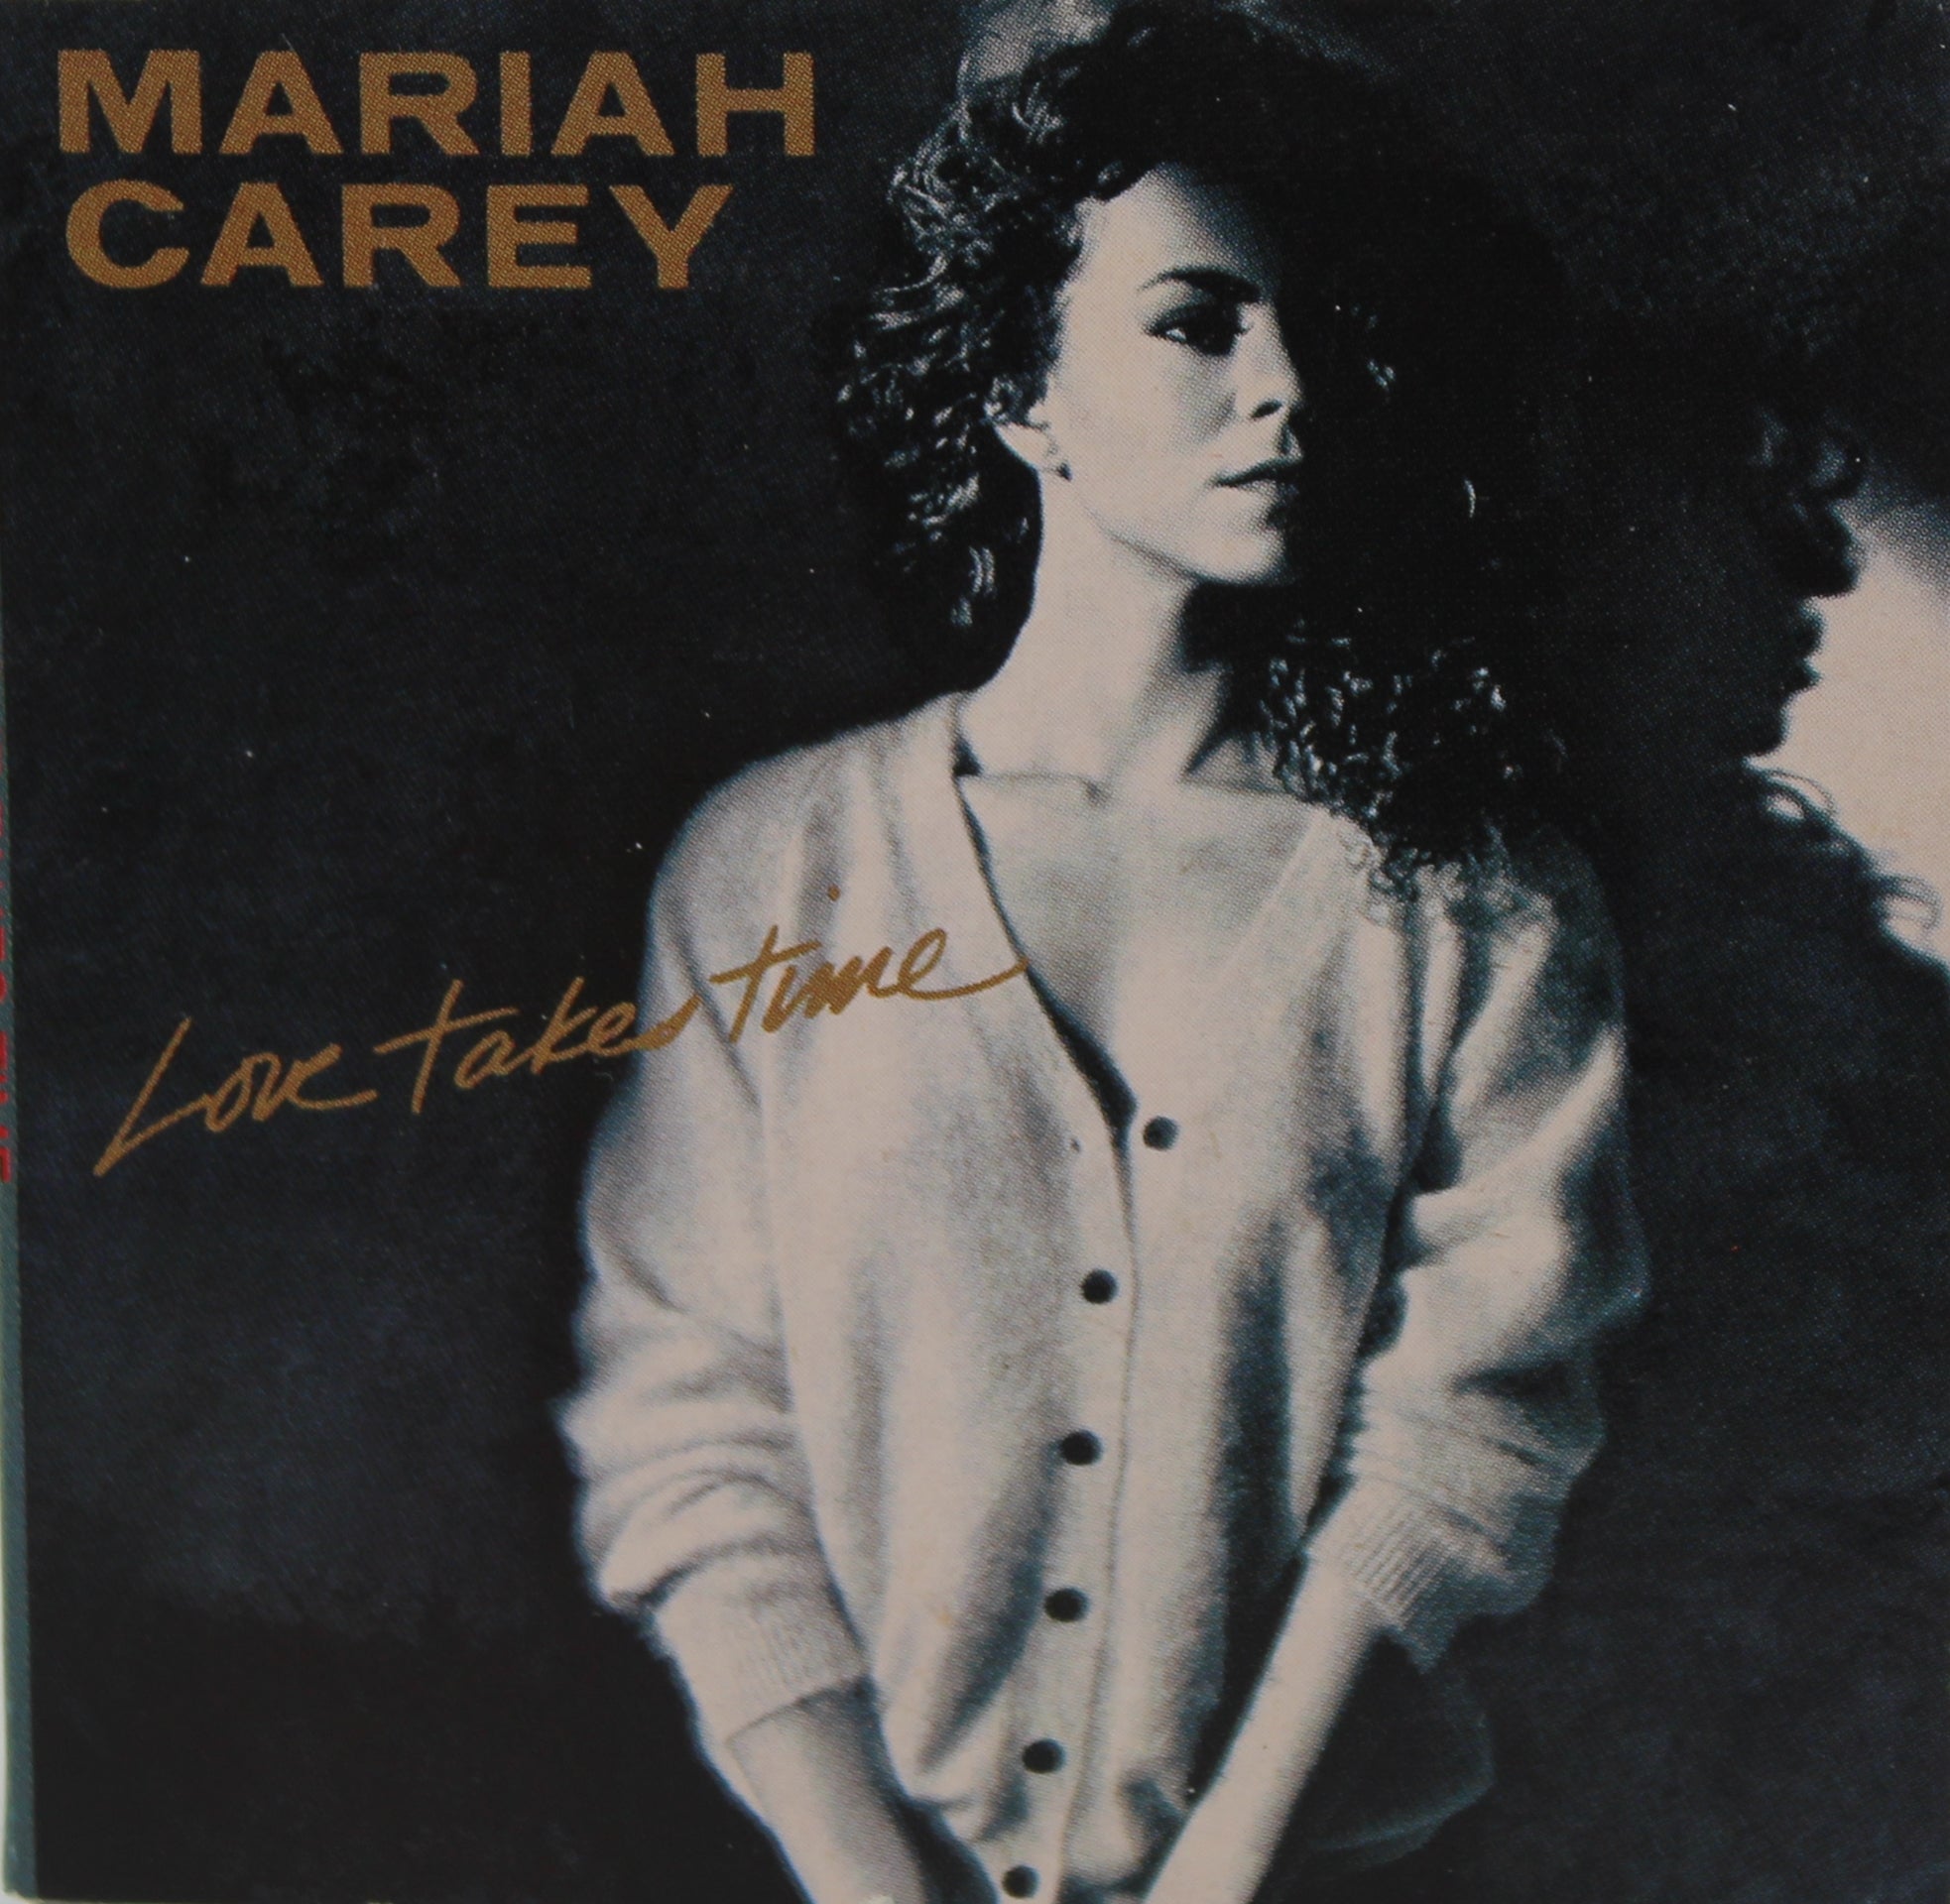 Mariah Carey – Love Takes Time, CD Single, UK 1990 (CD 595 